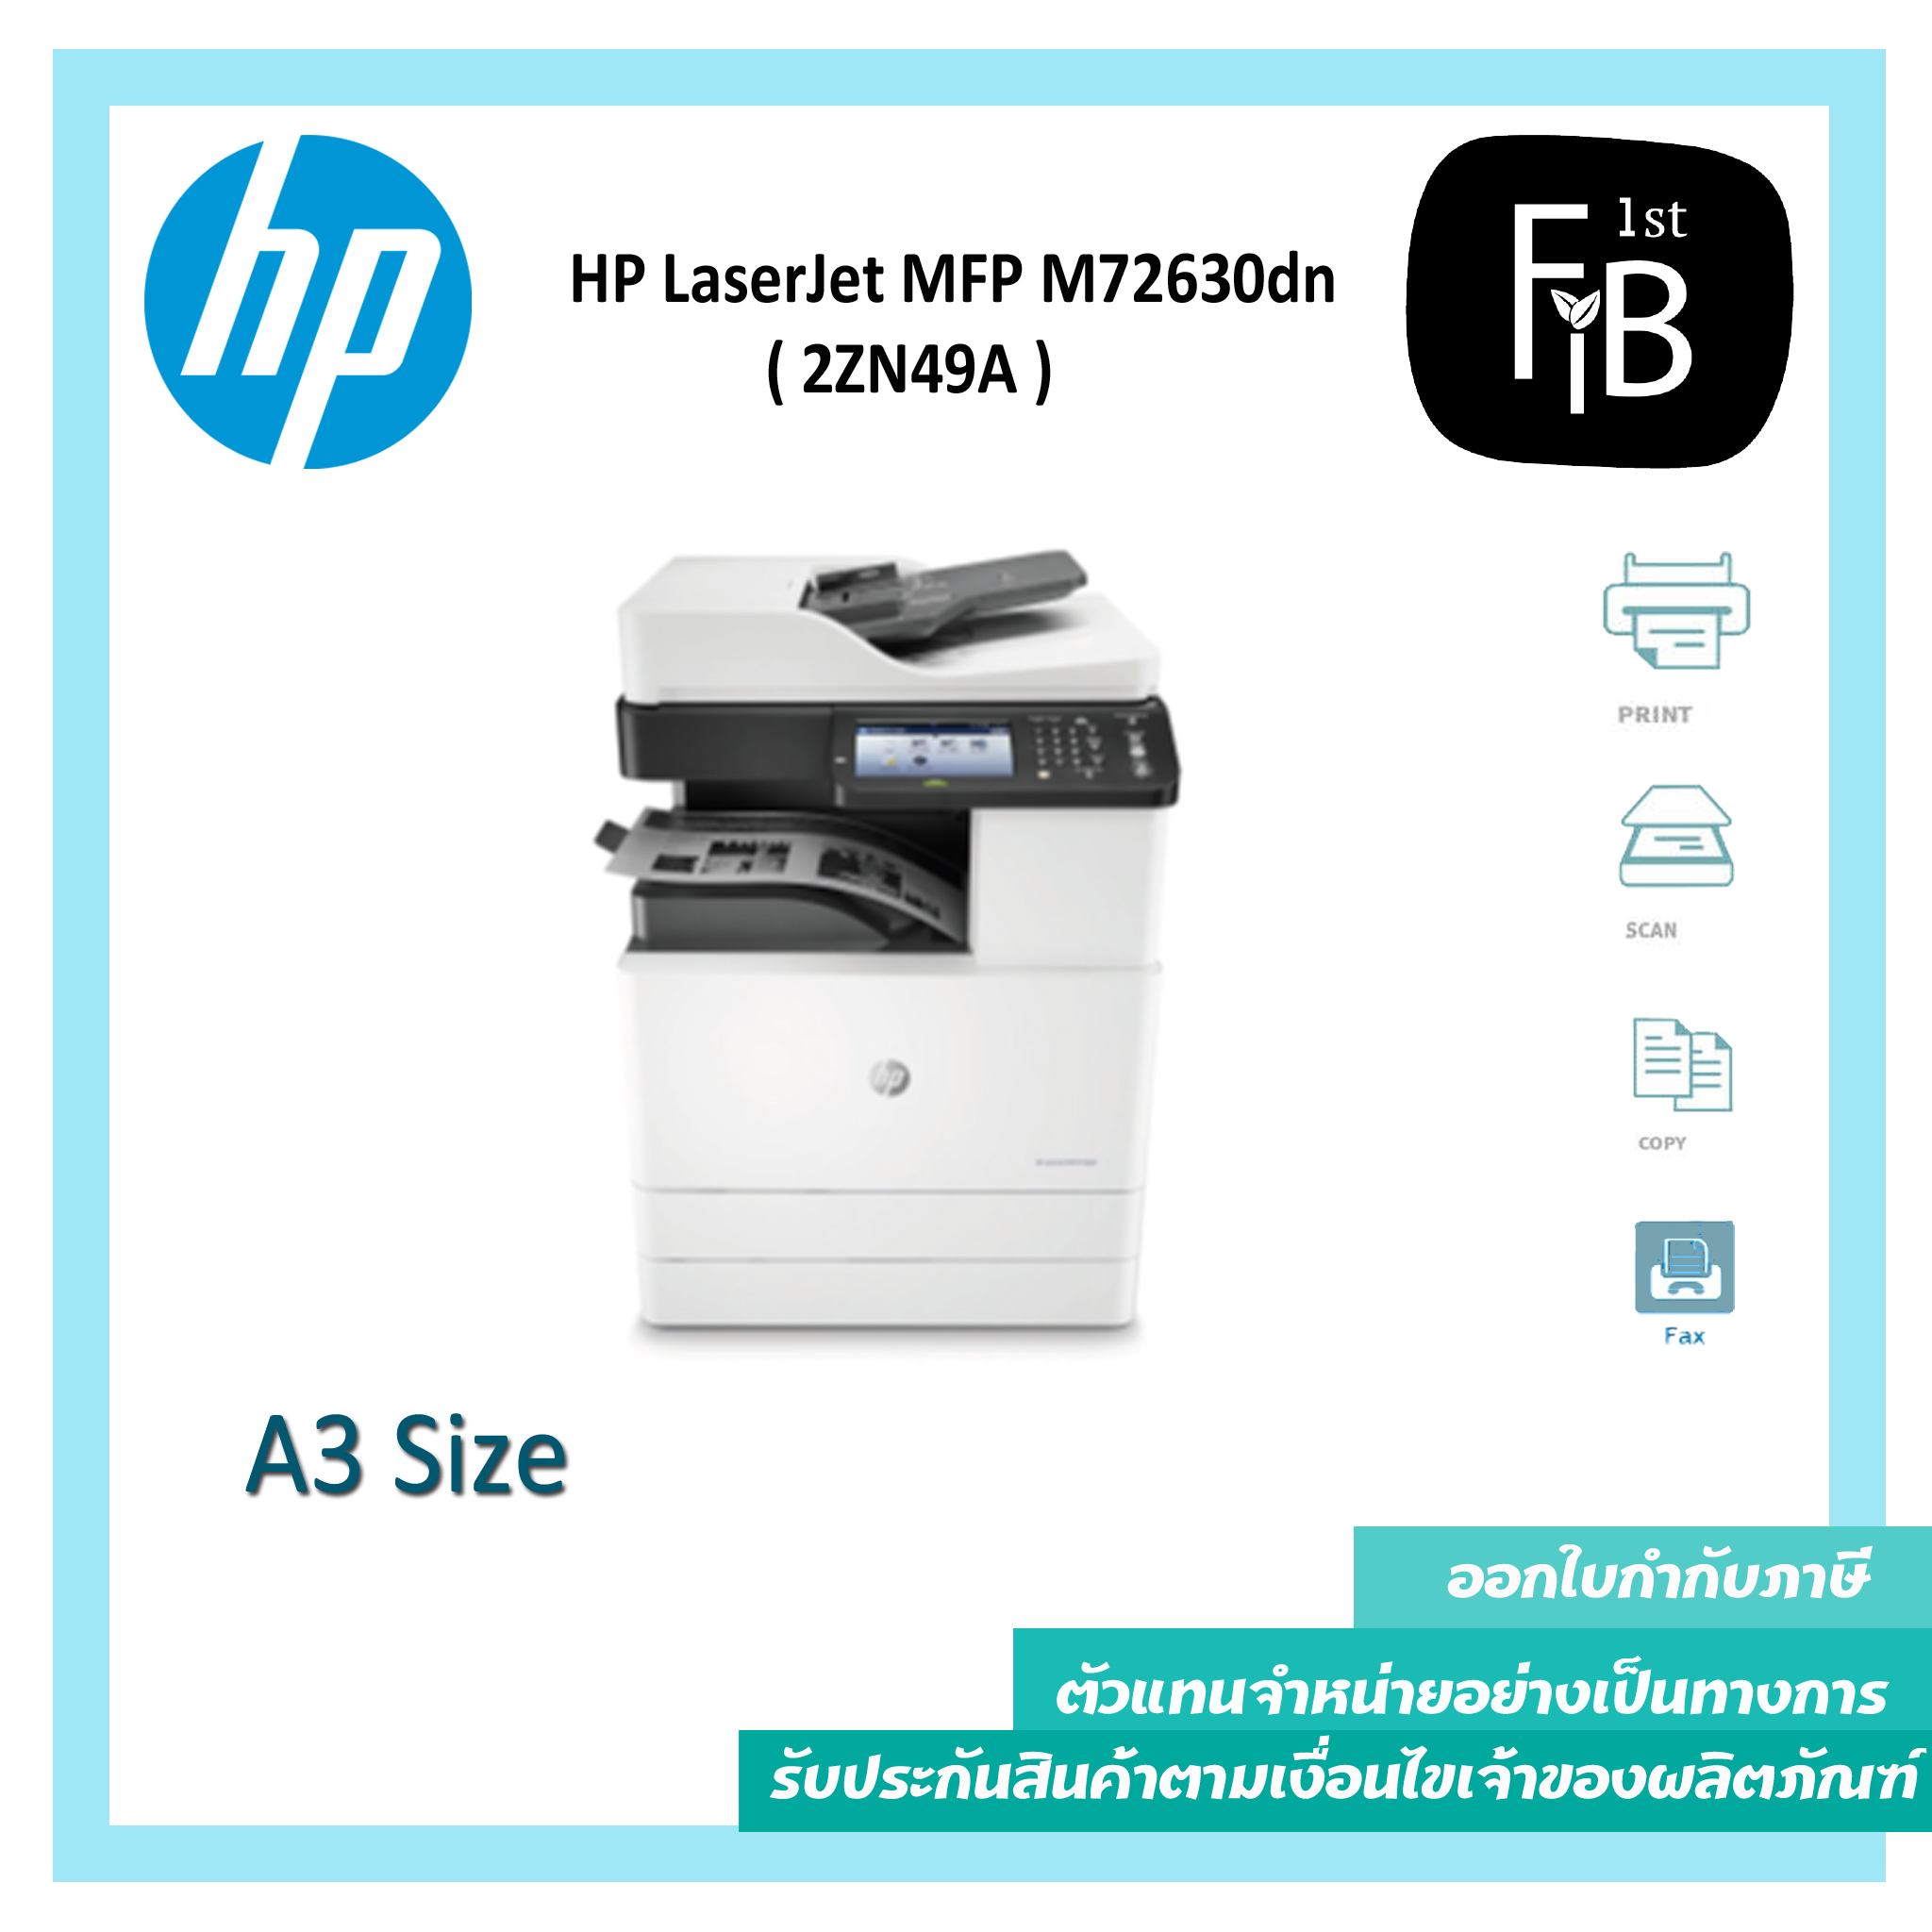 HP LaserJet MFP M72630dn